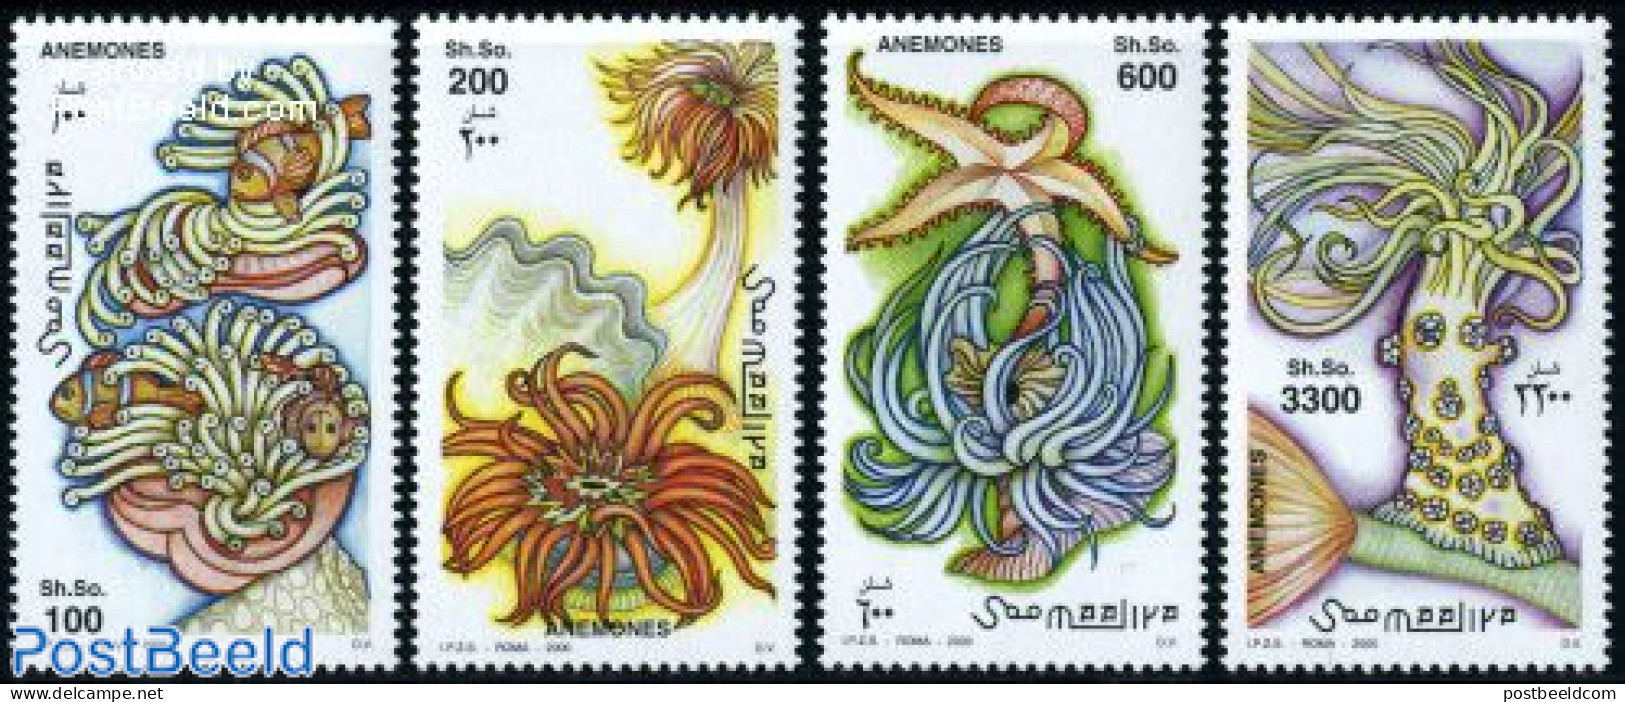 Somalia 2000 Anemones 4v, Mint NH, Nature - Shells & Crustaceans - Maritiem Leven